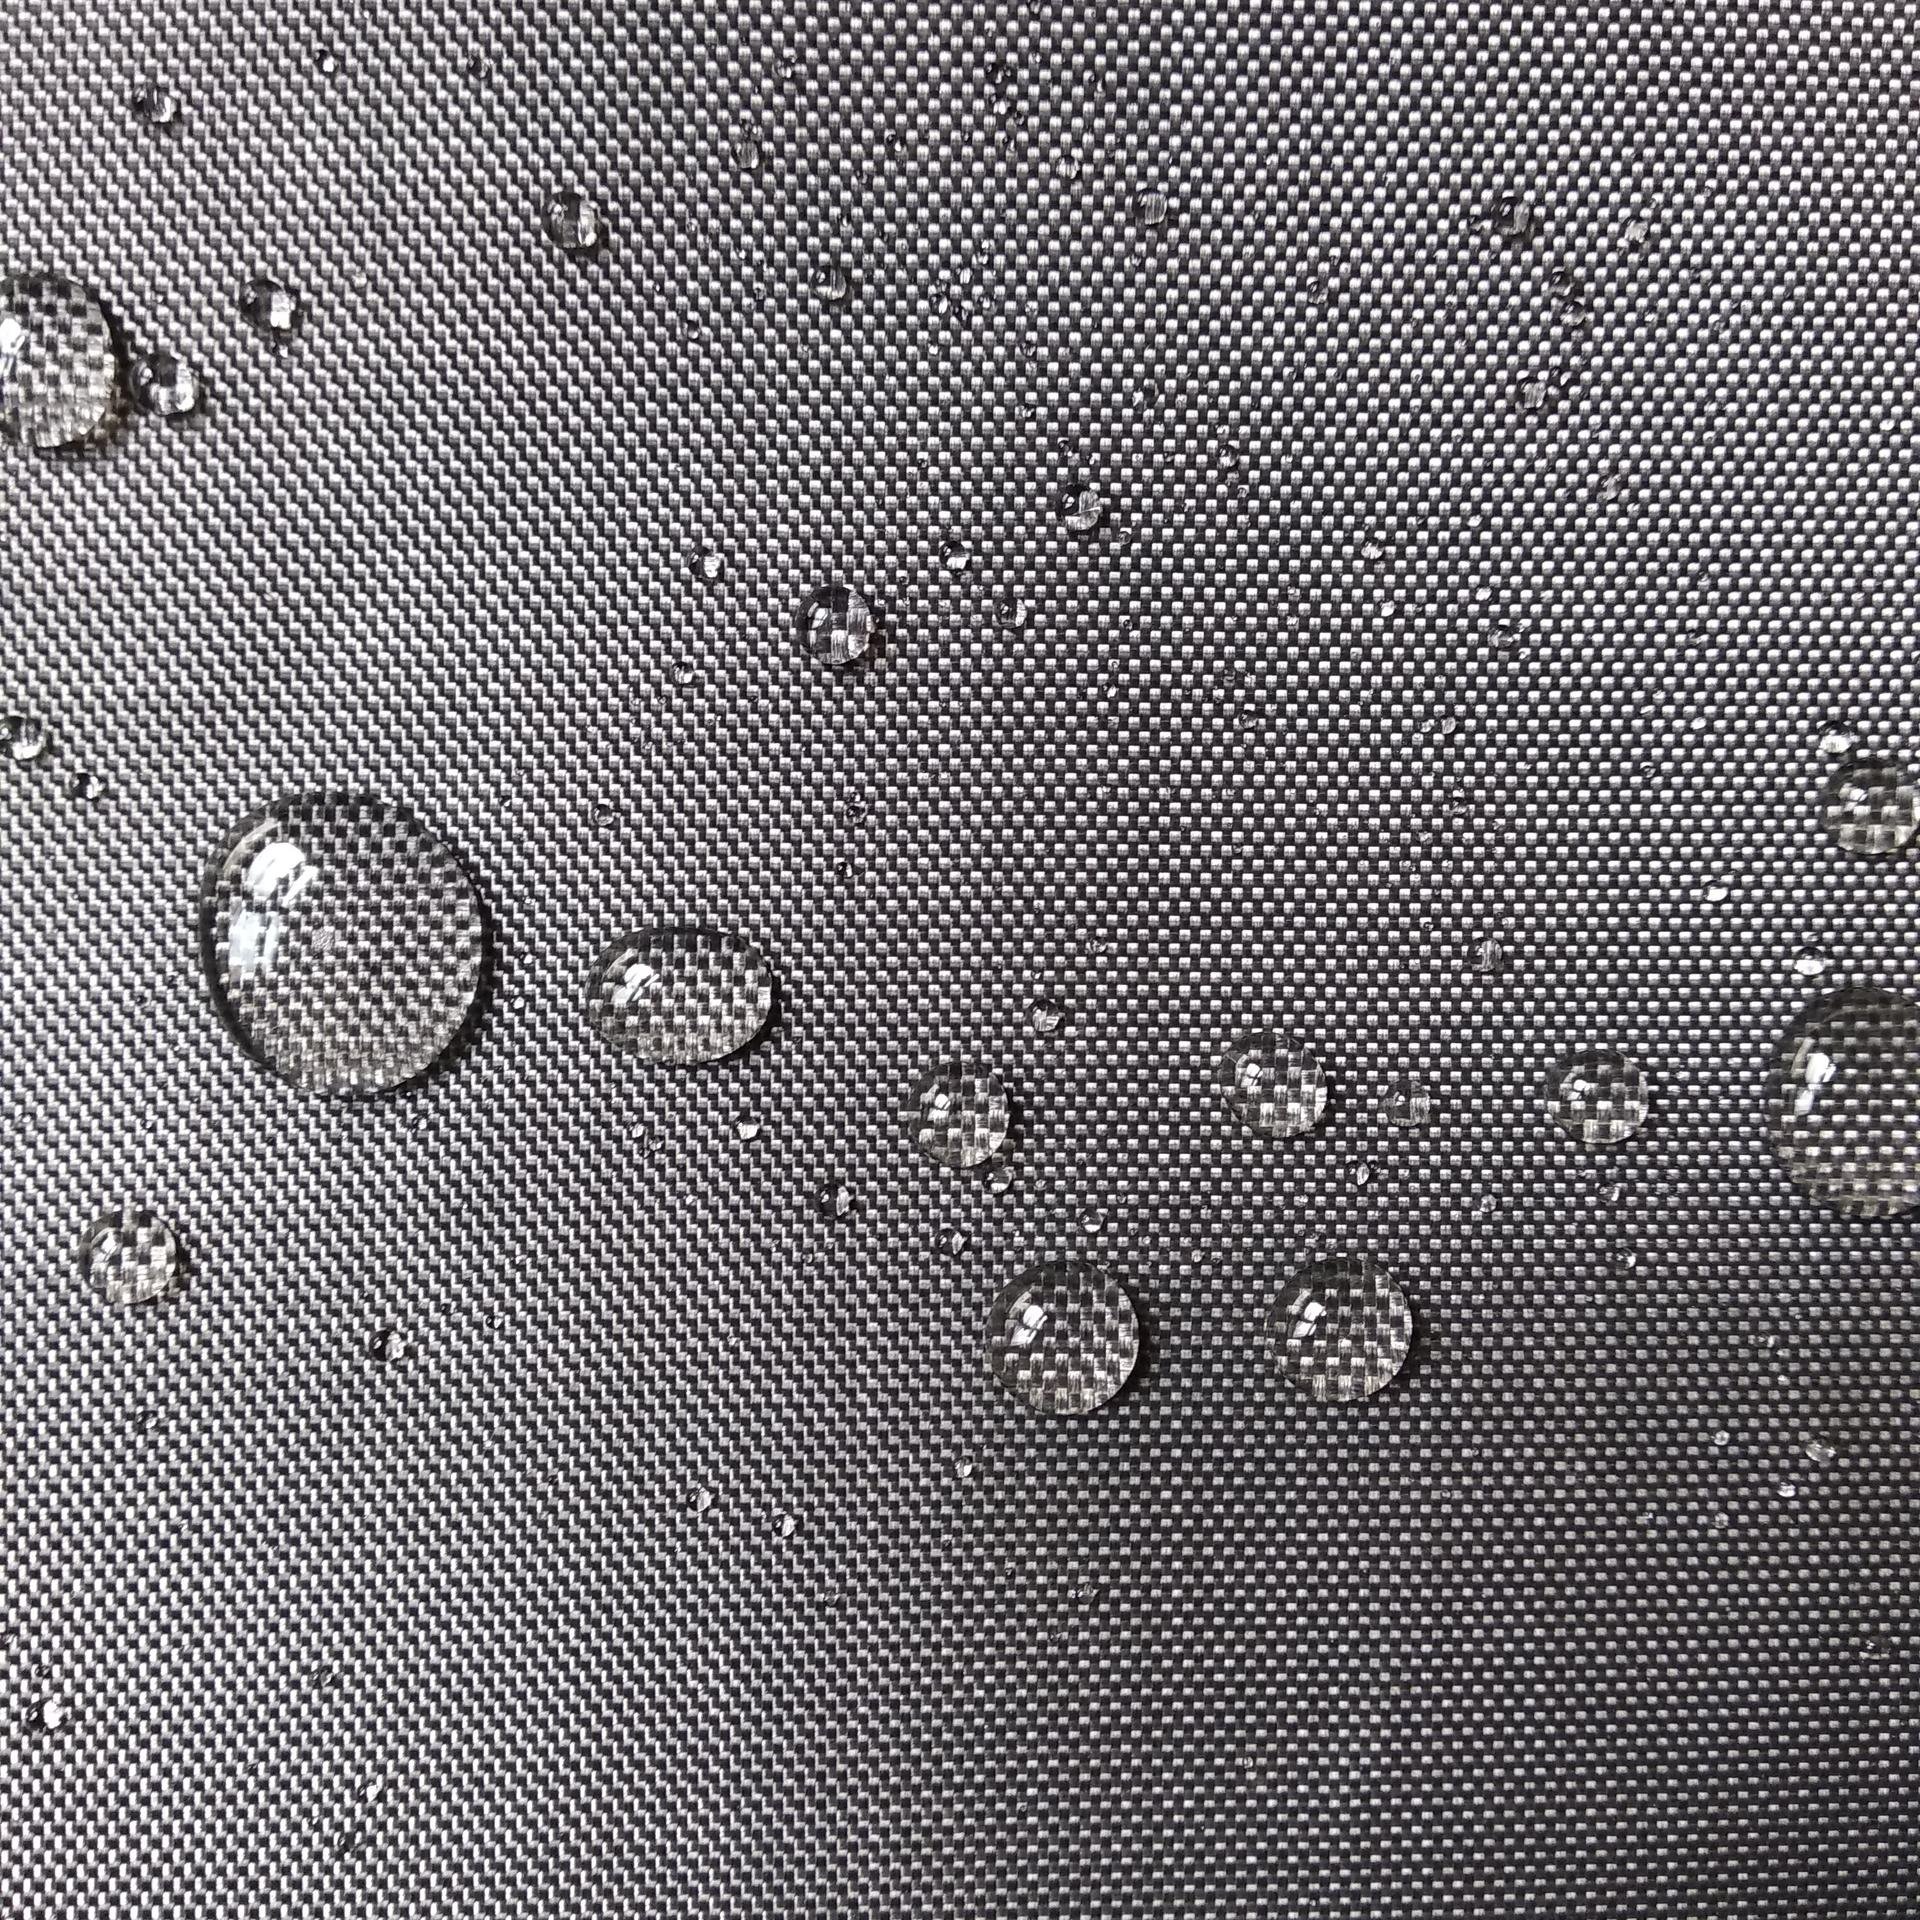 安朗公司专业生产黑色玻璃纤维布,高密度黑色玻璃纤维布,黑色无碱憎水玻璃纤维布主要用于声屏障包裹、保温棉包裹防腐憎水作用。